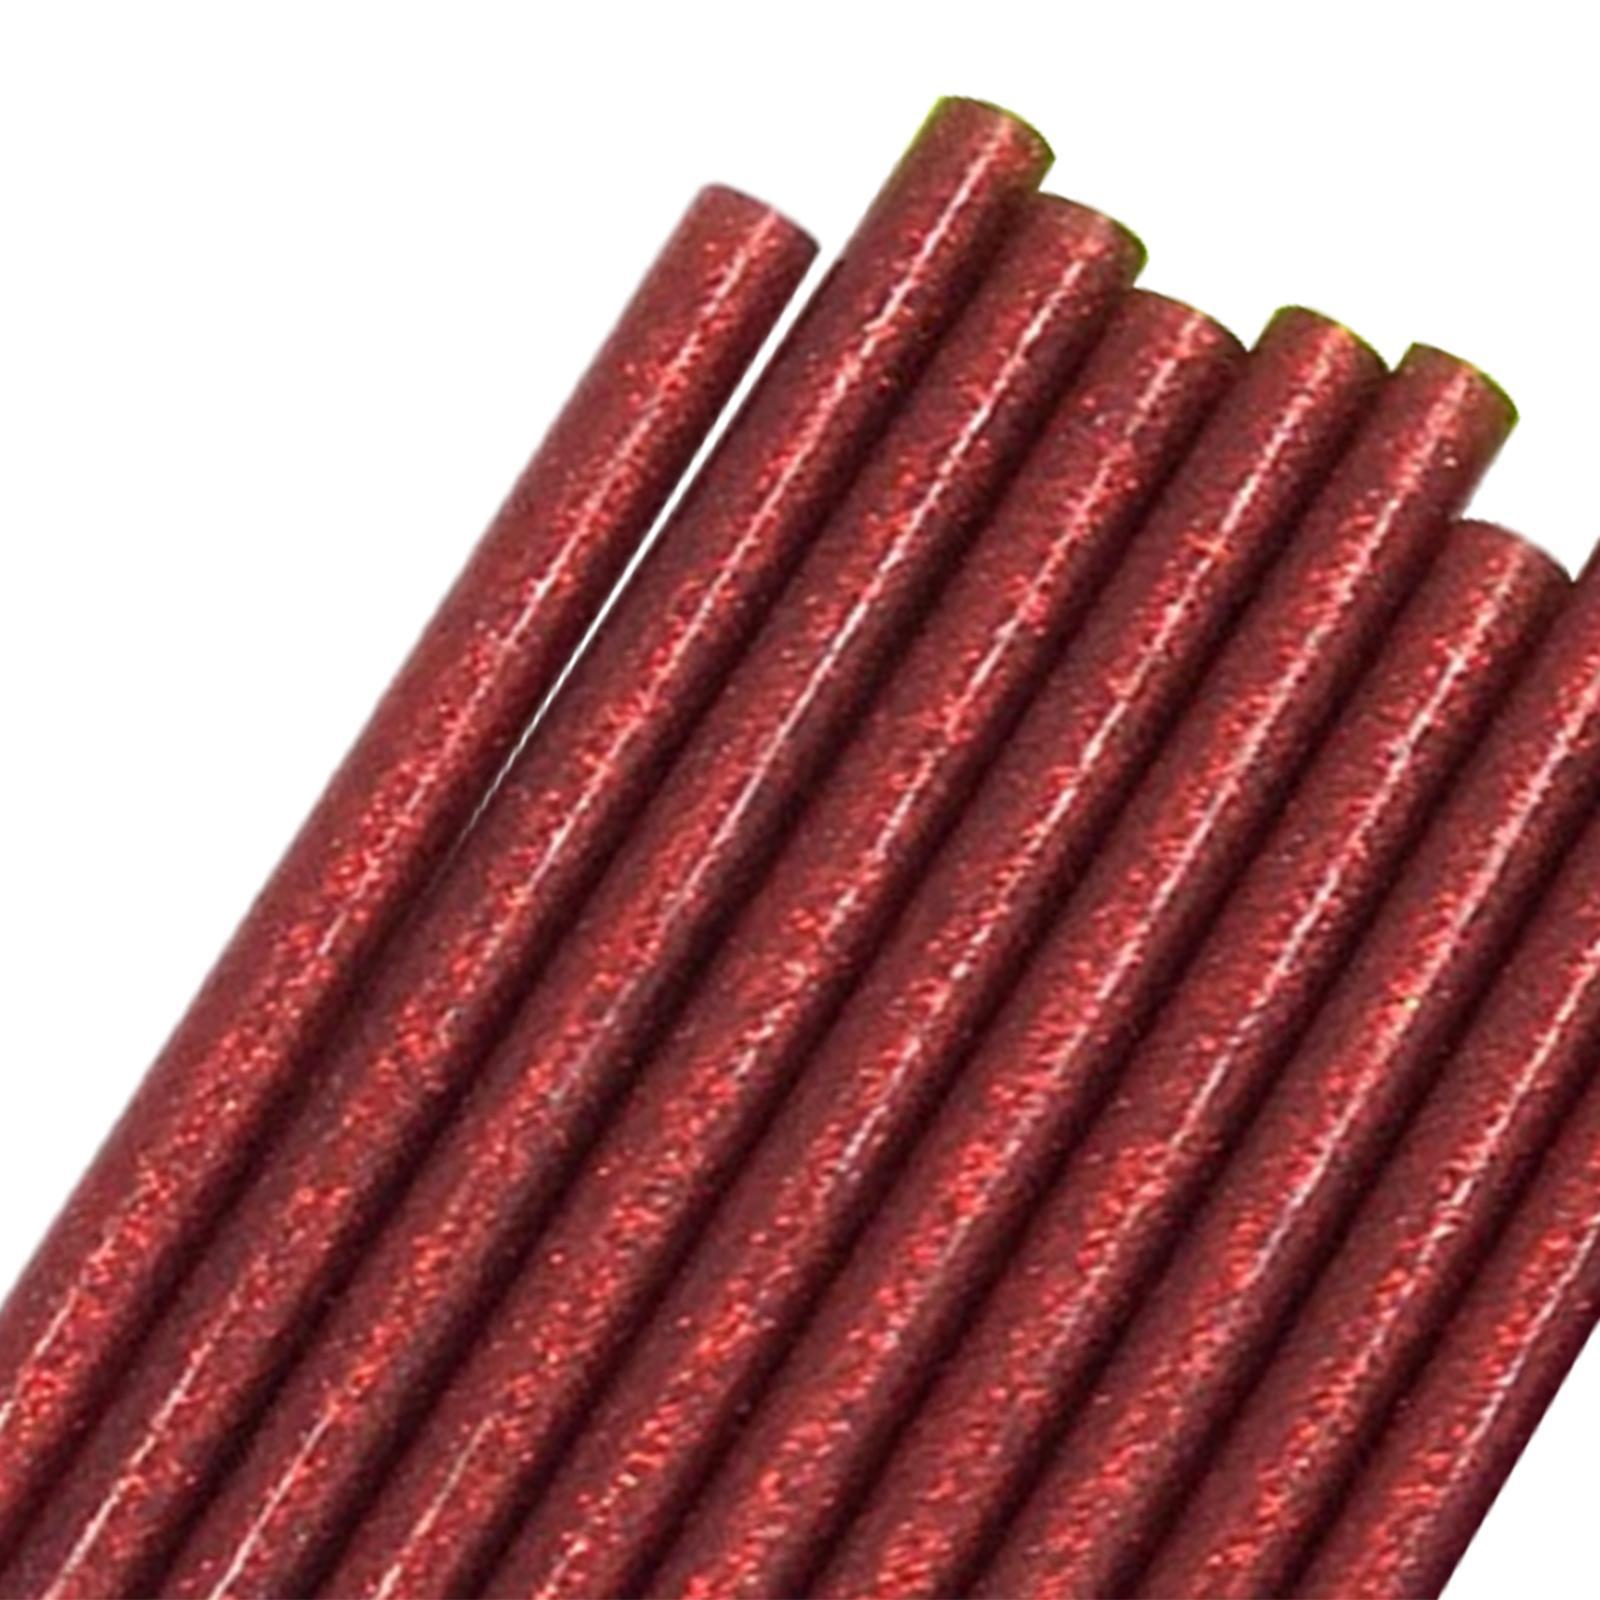 10x Colored Hot Melt Glue Sticks Color Hot Glue Sticks Glue Sticks for Cards DIY Sealing Holiday Craft